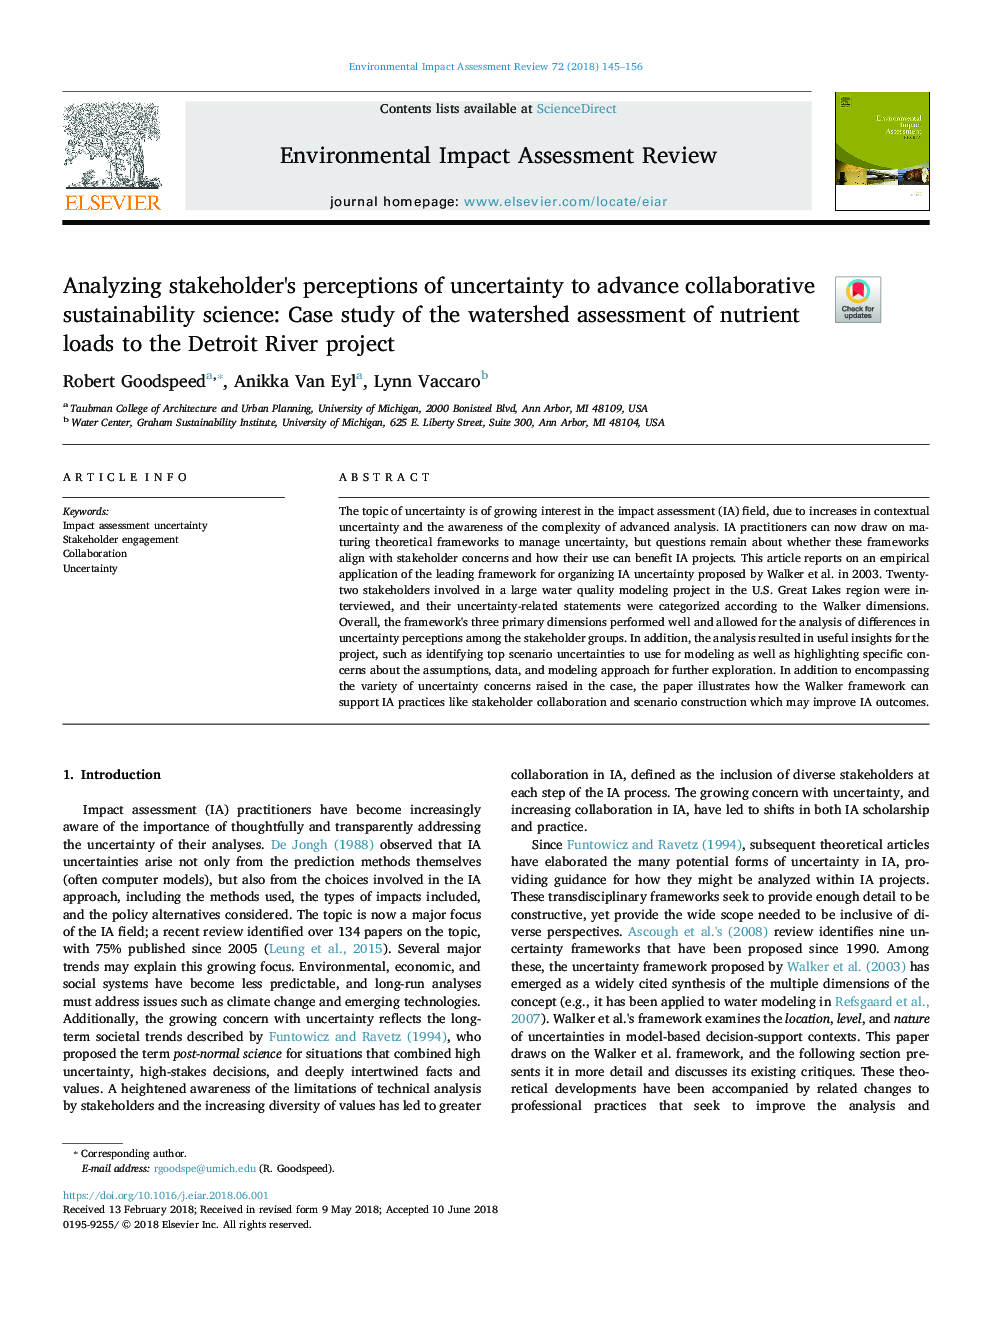 تجزیه و تحلیل ادراک ذینفعان از عدم اطمینان برای پیشبرد علم پایداری مشترک: مطالعه موردی ارزیابی آبخیزداری بارهای مواد مغذی به پروژه رودخانه دیترویت 